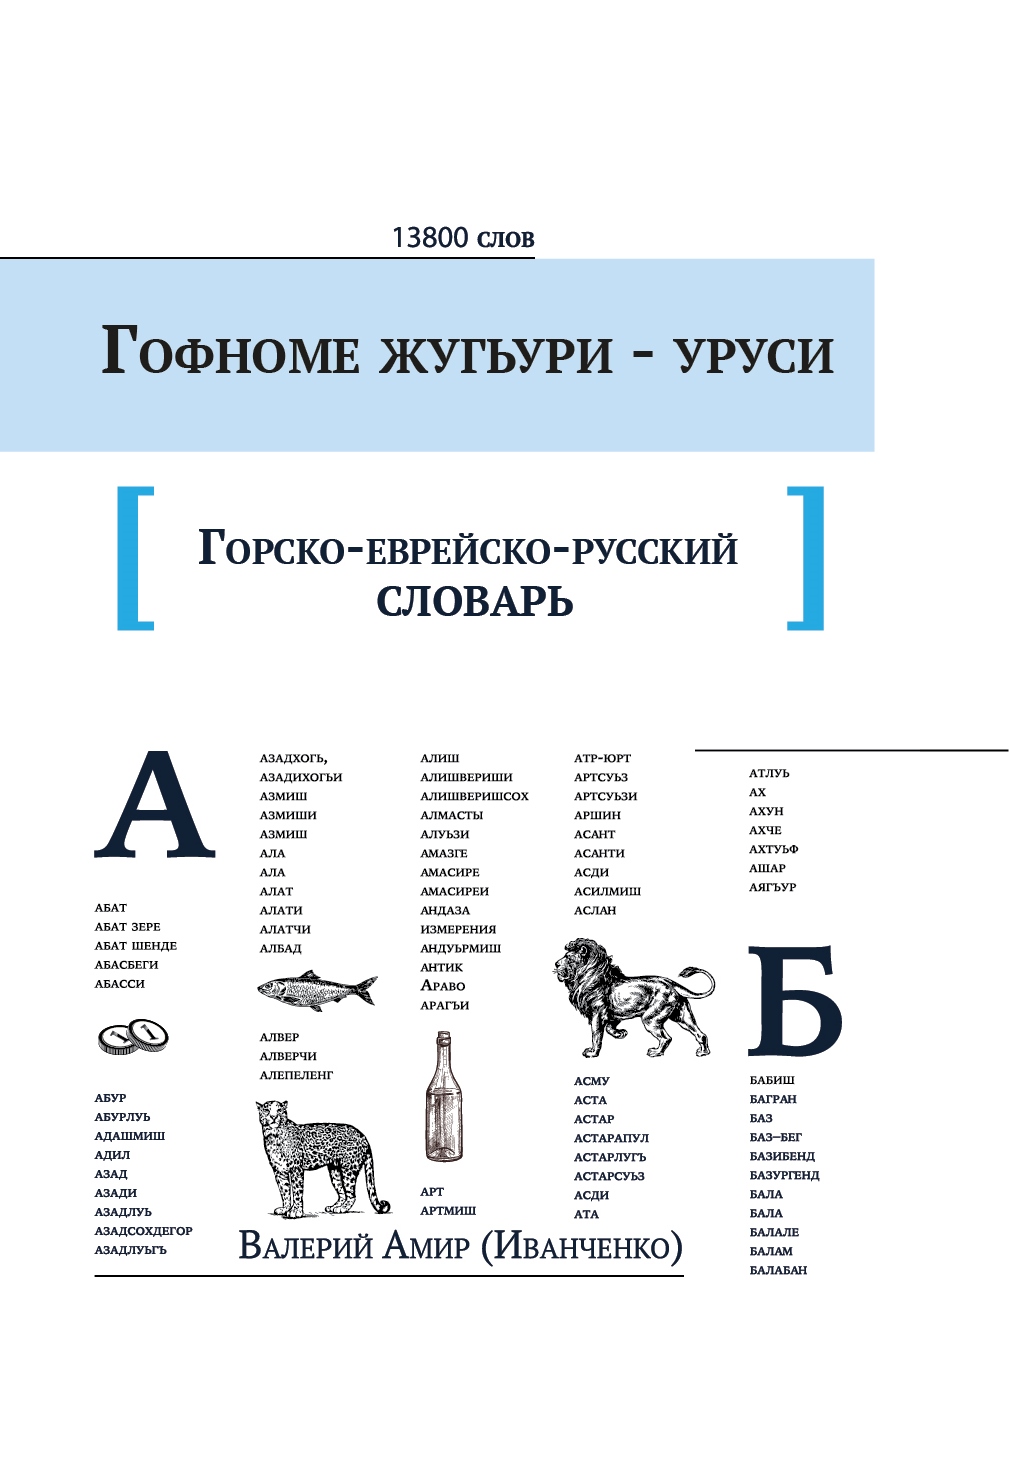 Горско-еврейско-русский словарь